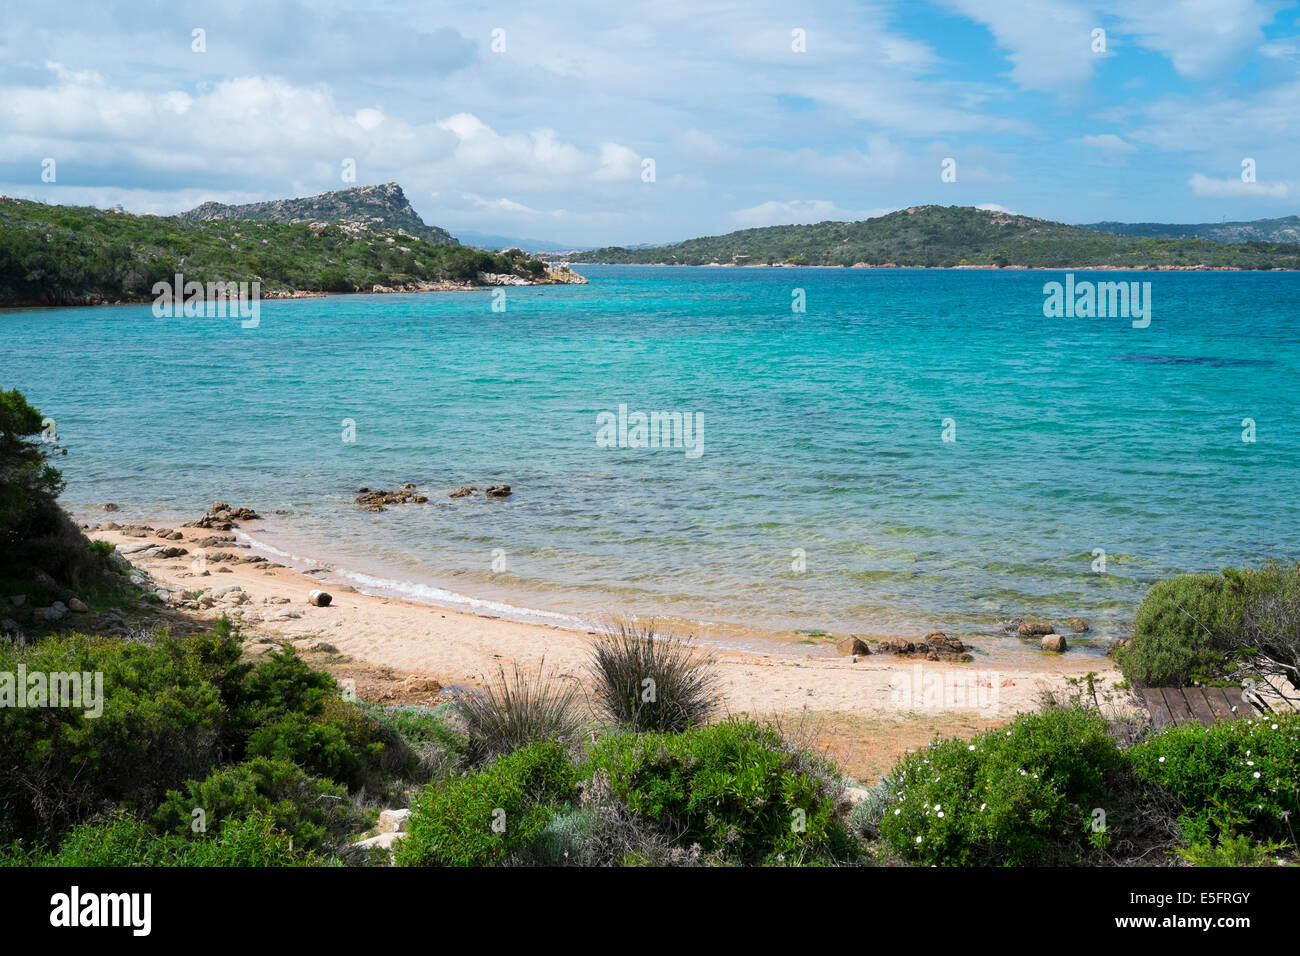 Beach in Caprera island, La Maddalena, Sardinia, Italy Stock Photo